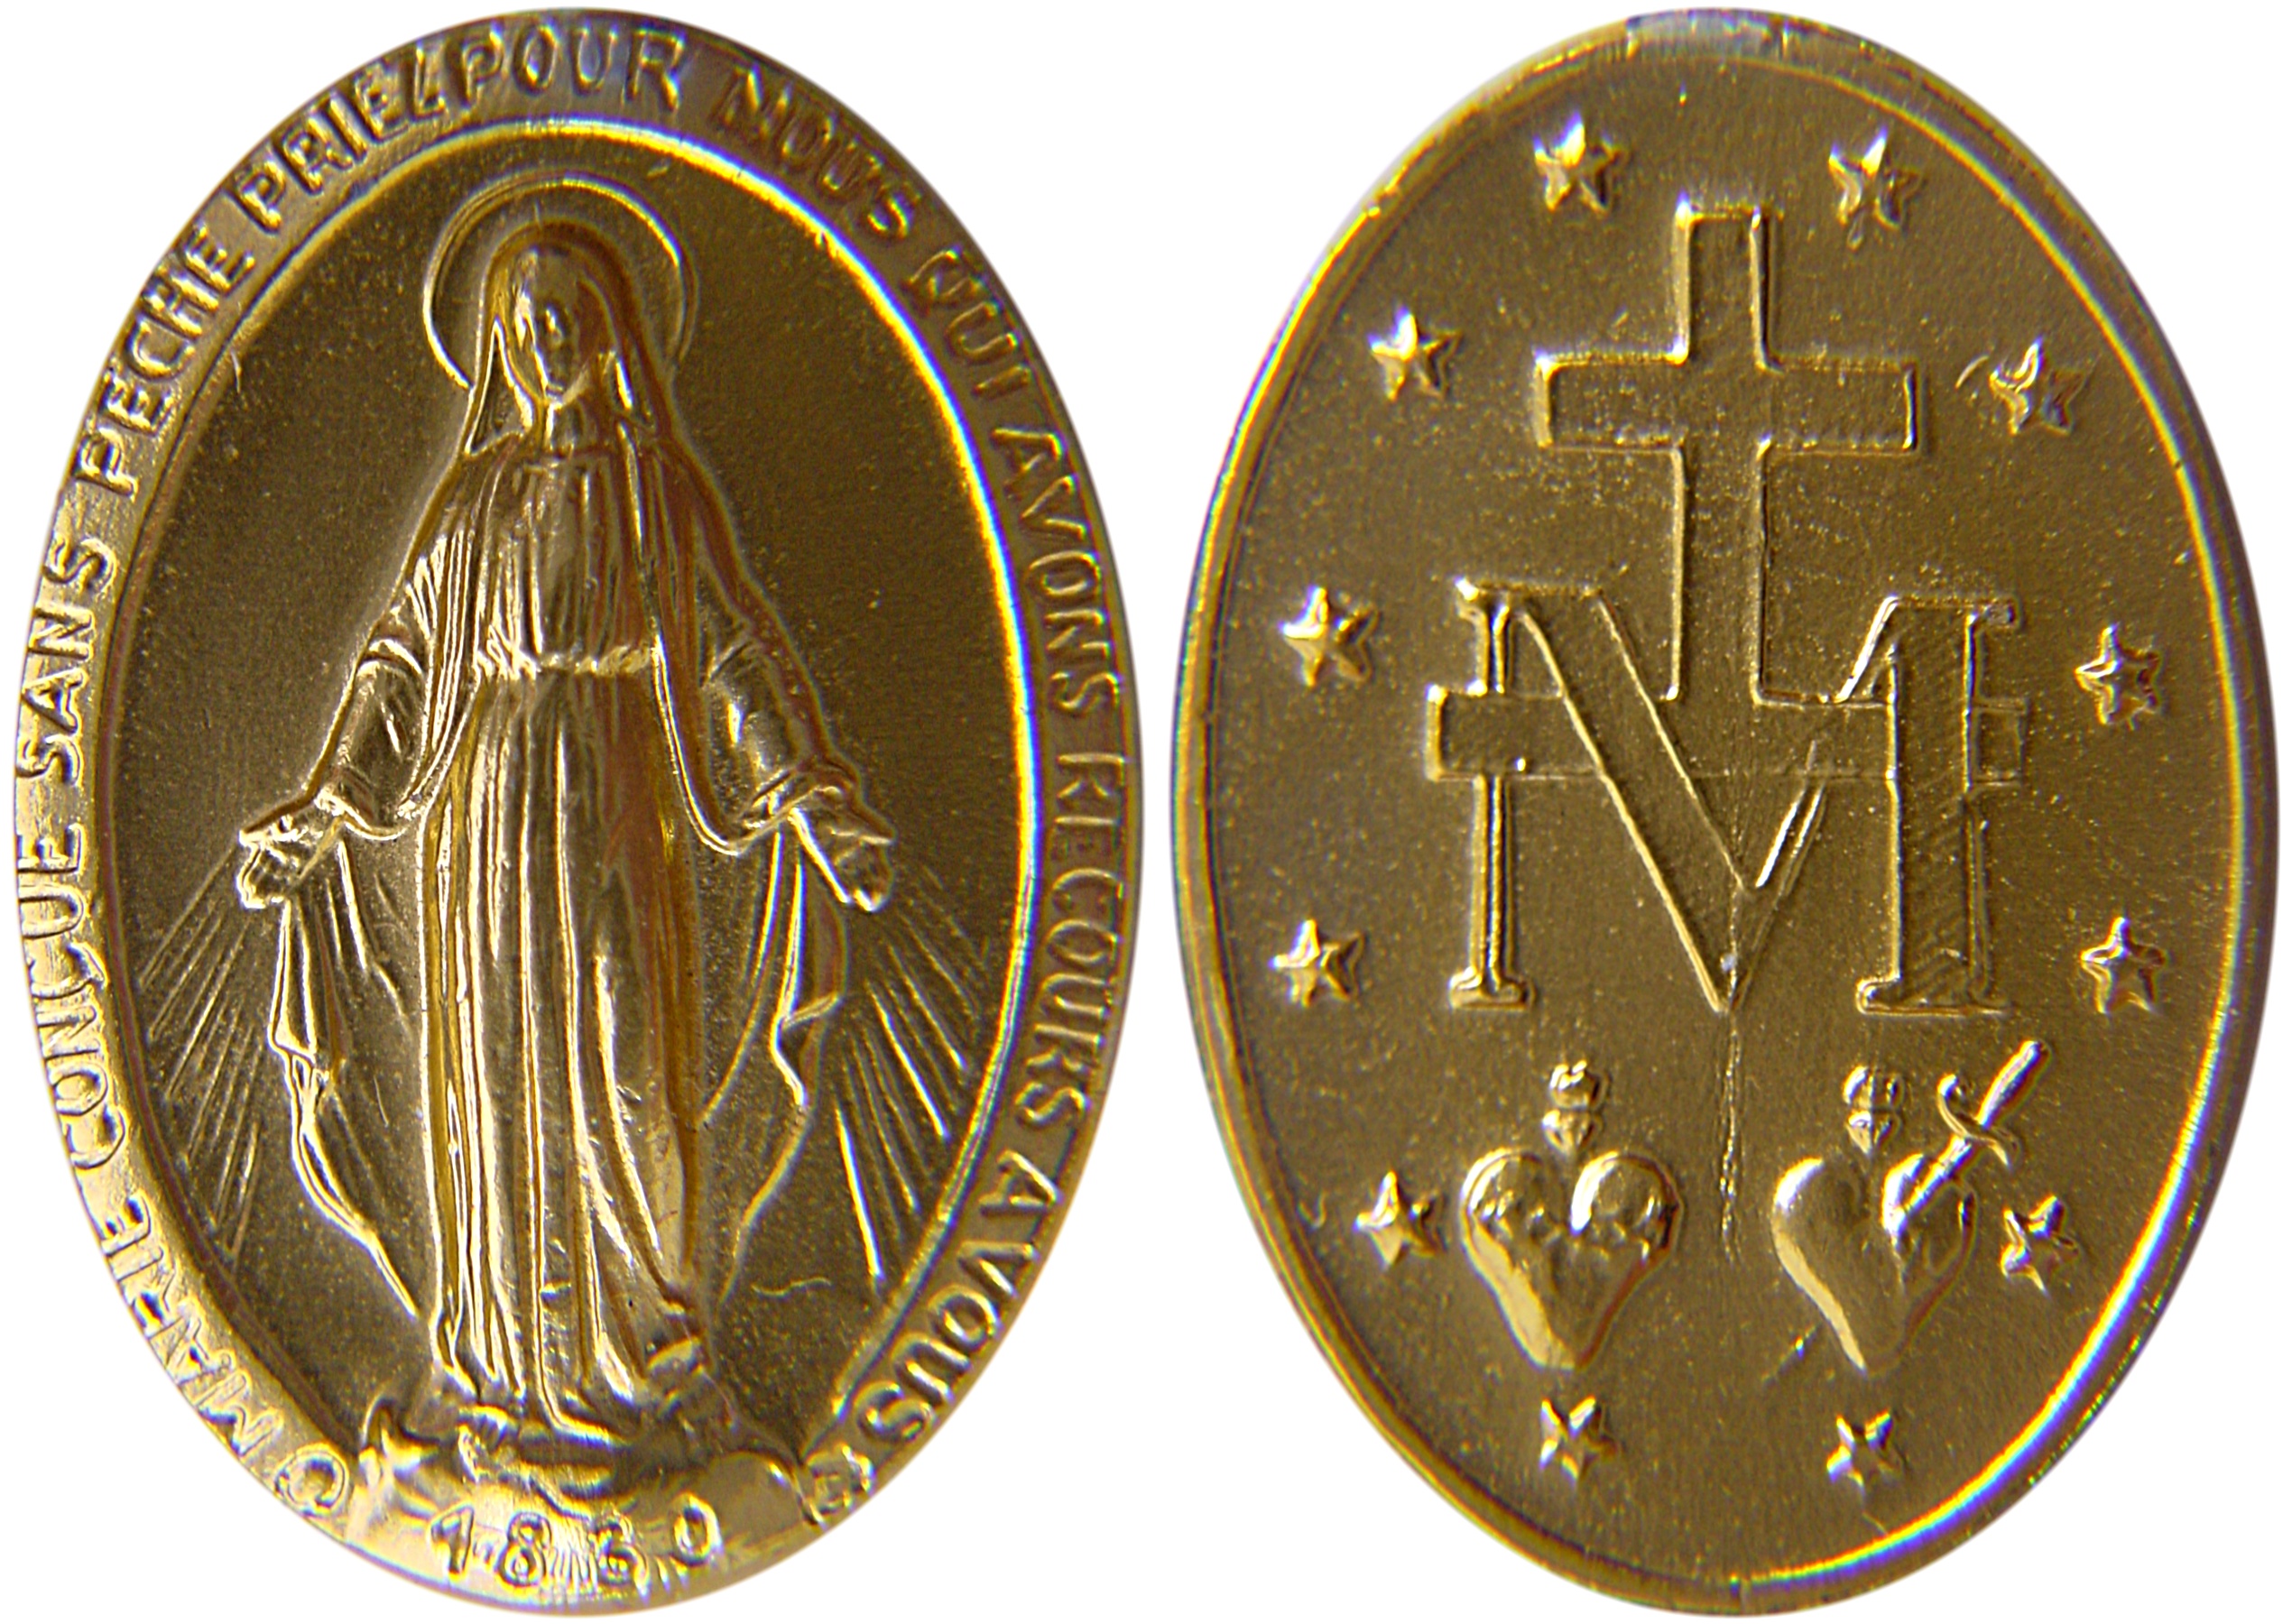 A fé católica de Usain Bolt e a medalha milagrosa que ele não larga